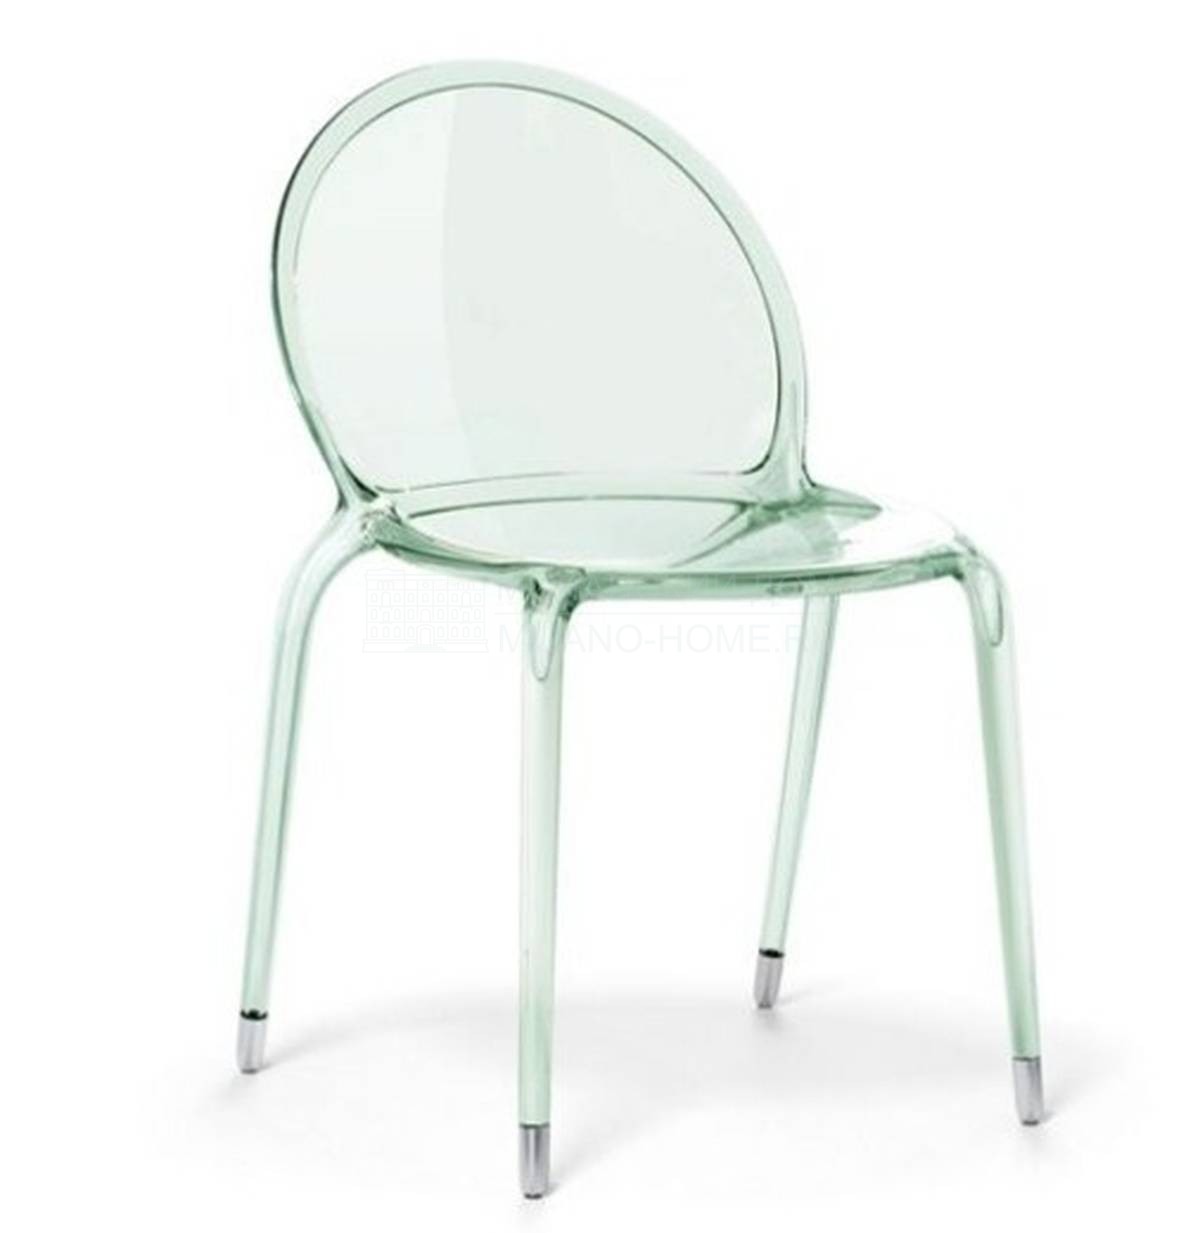 Металлический / Пластиковый стул Loop chair из Франции фабрики ROCHE BOBOIS